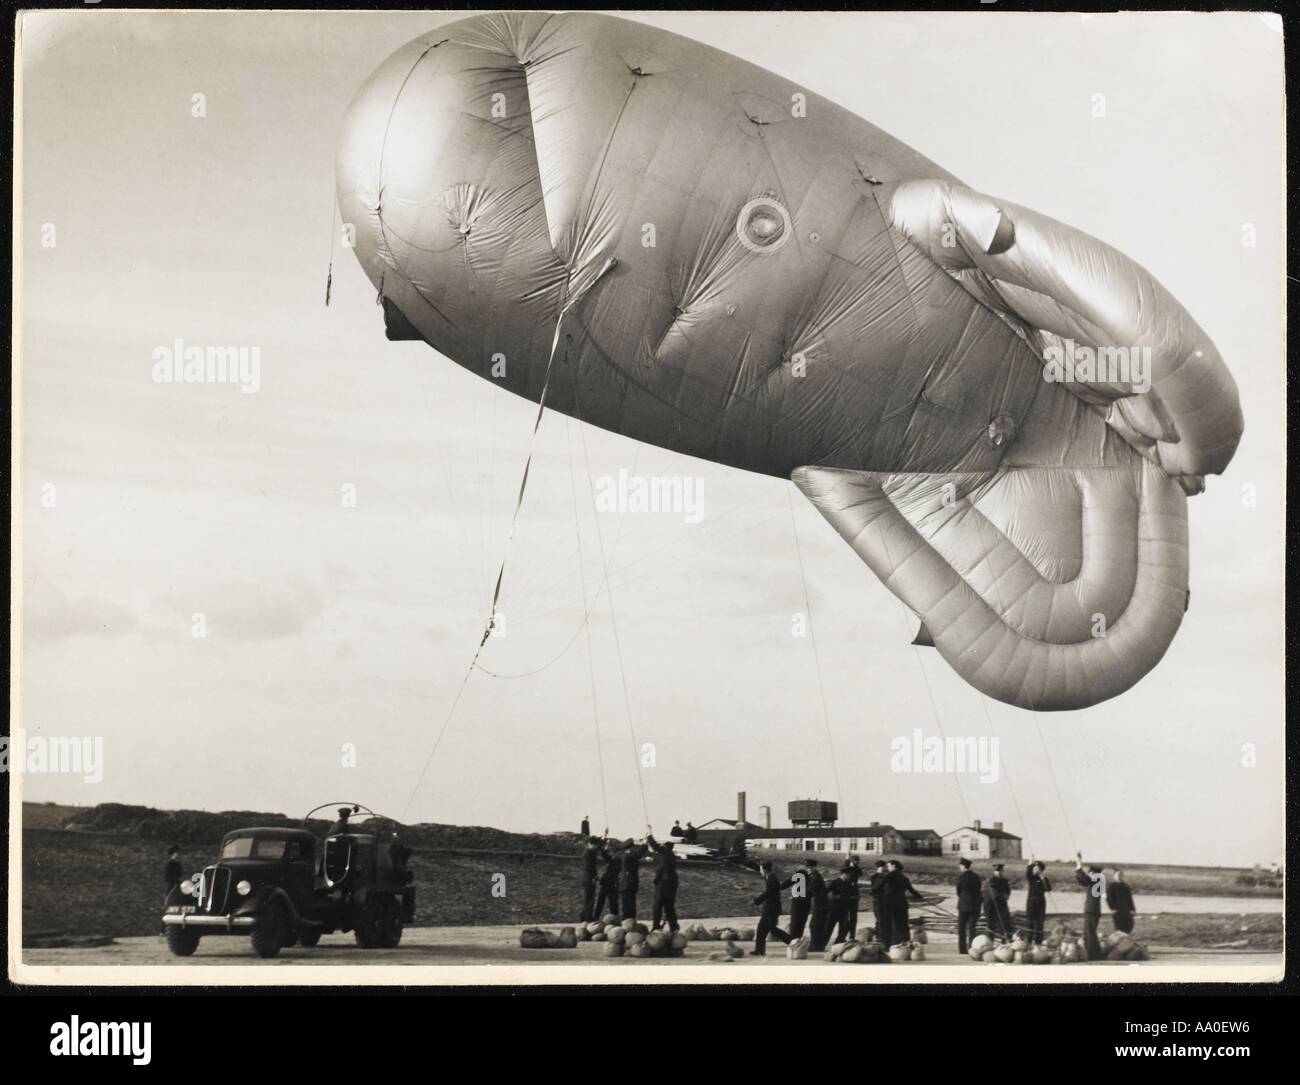 Barrage Balloon Stock Photo